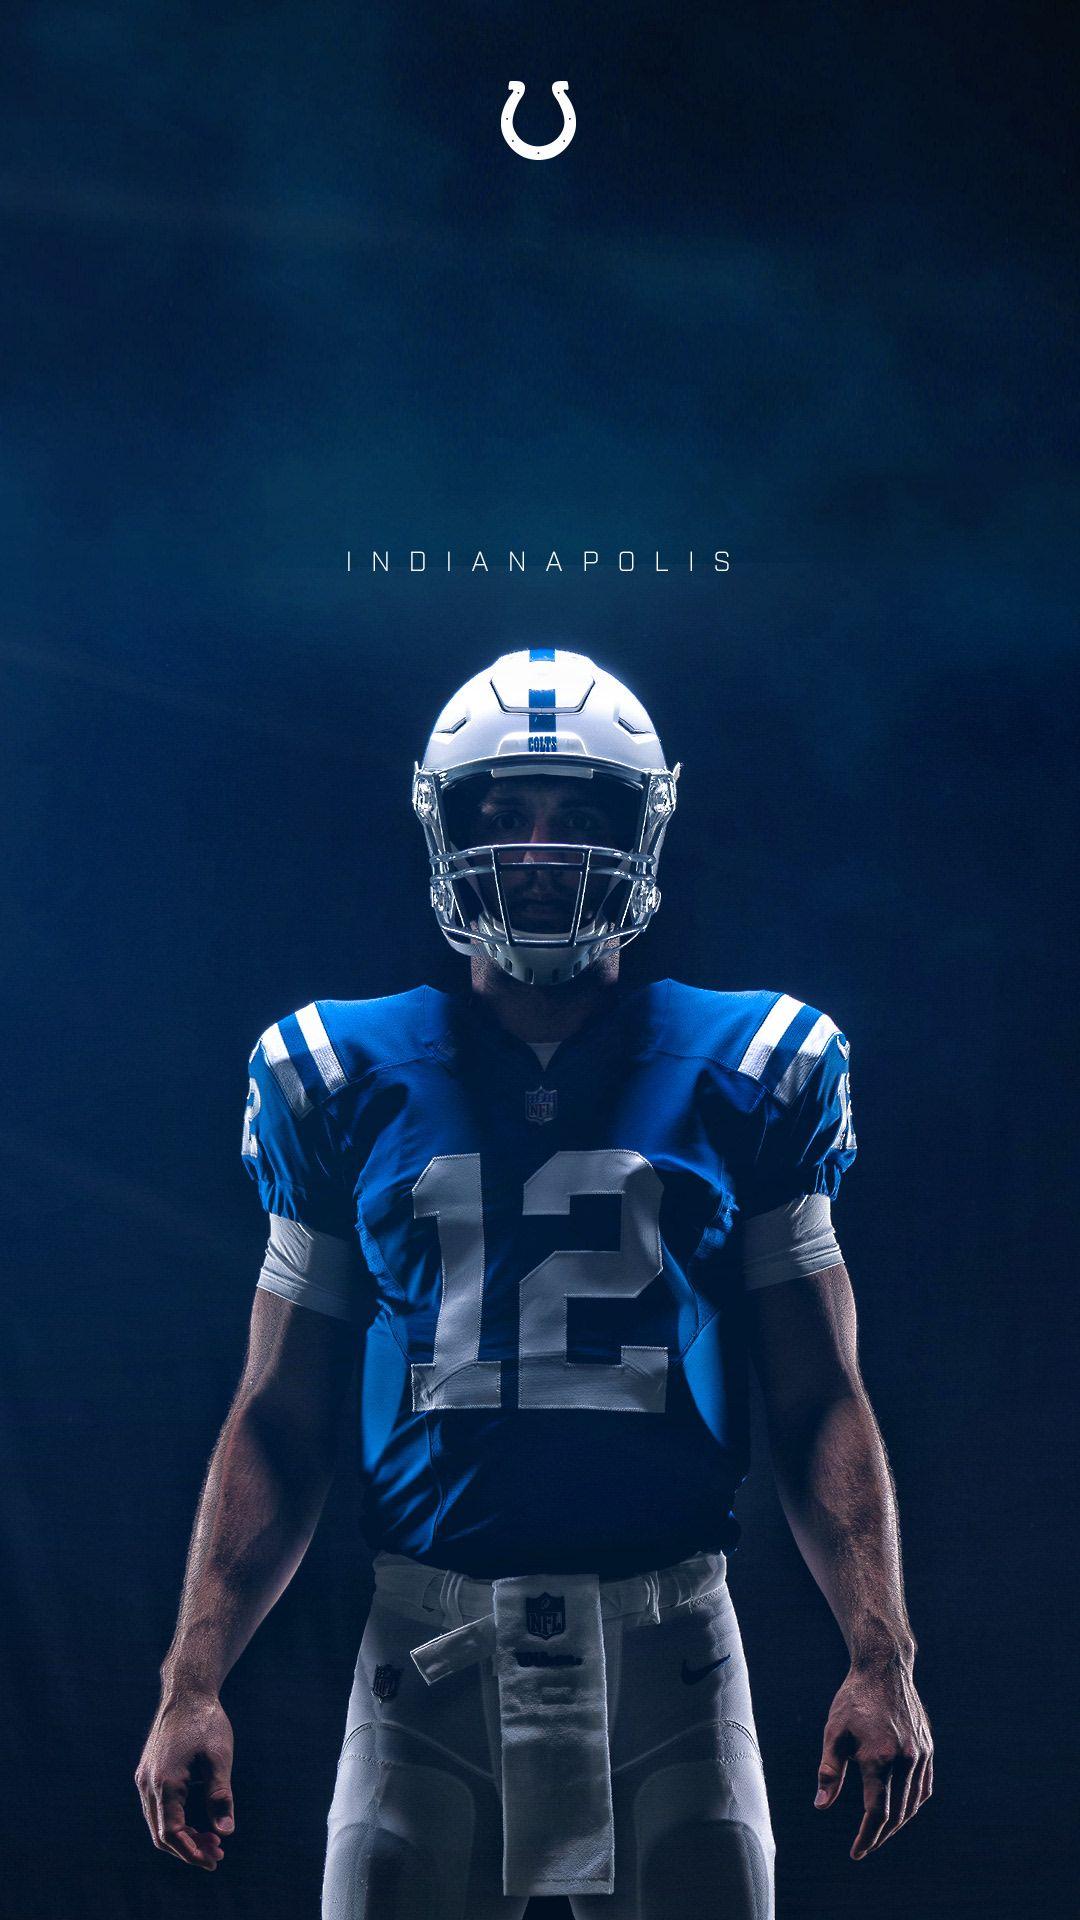 1080x1920 Trang web chính thức của Indianapolis Colts